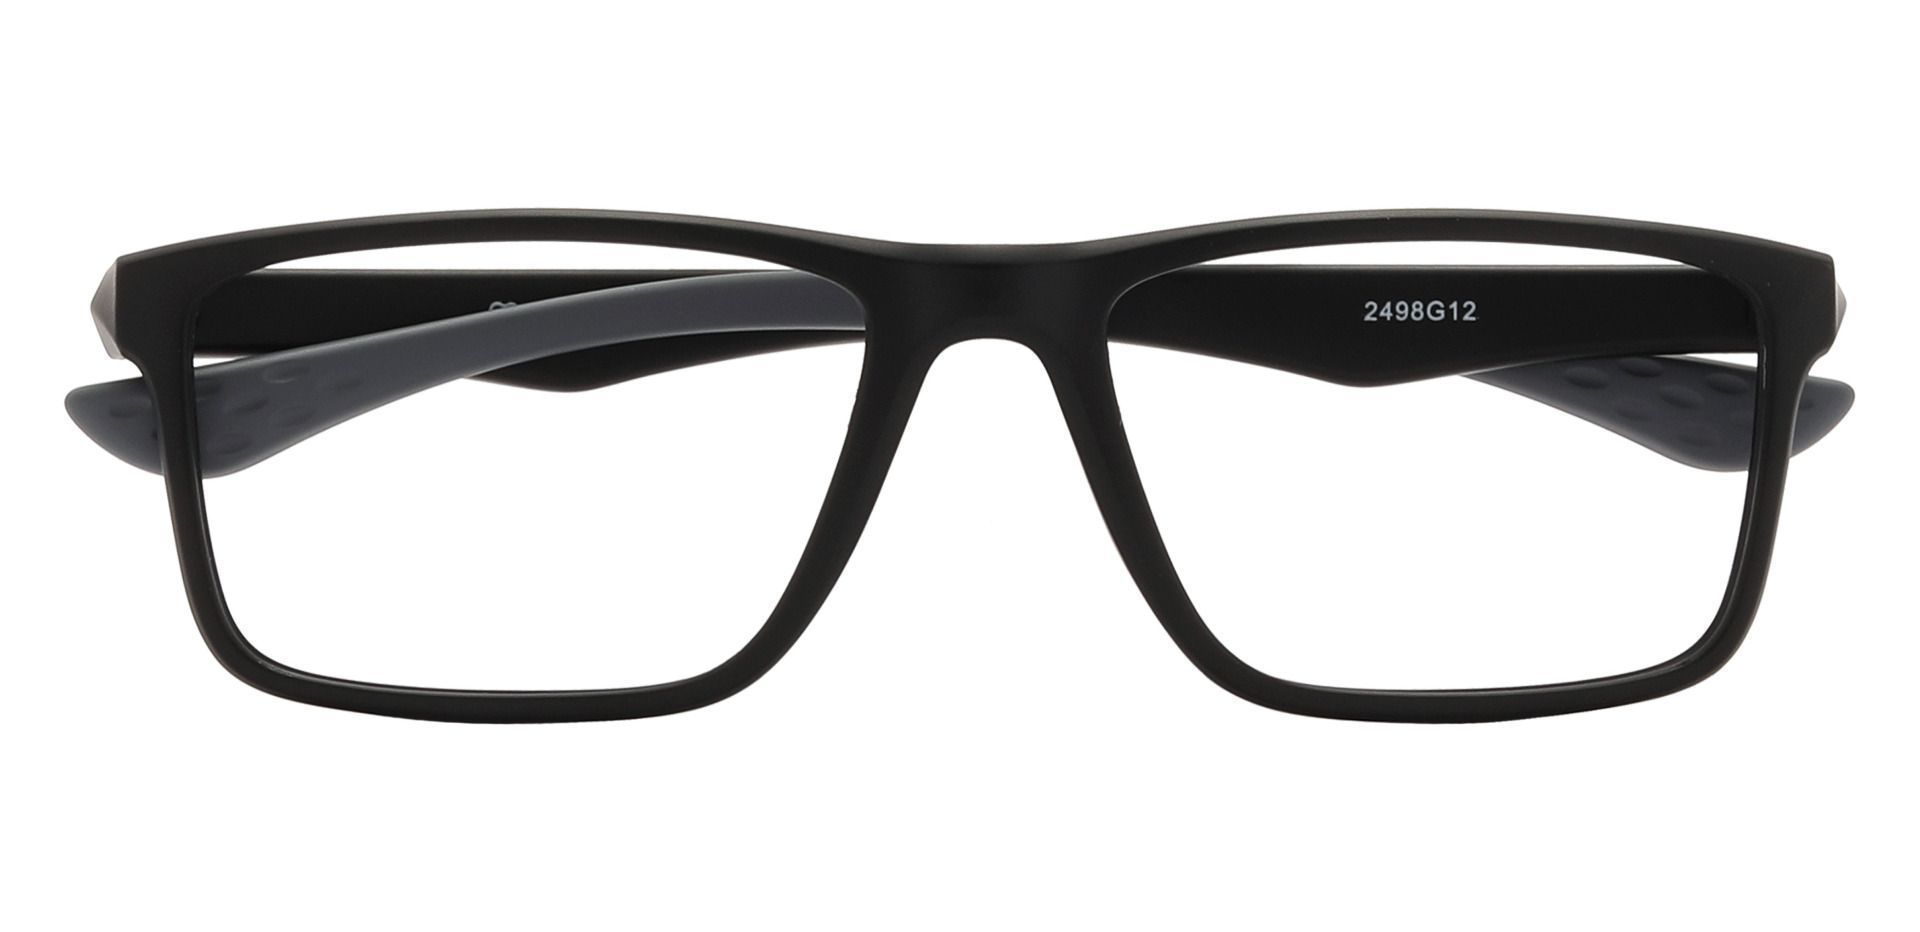 Seth Rectangle Prescription Glasses - Gray